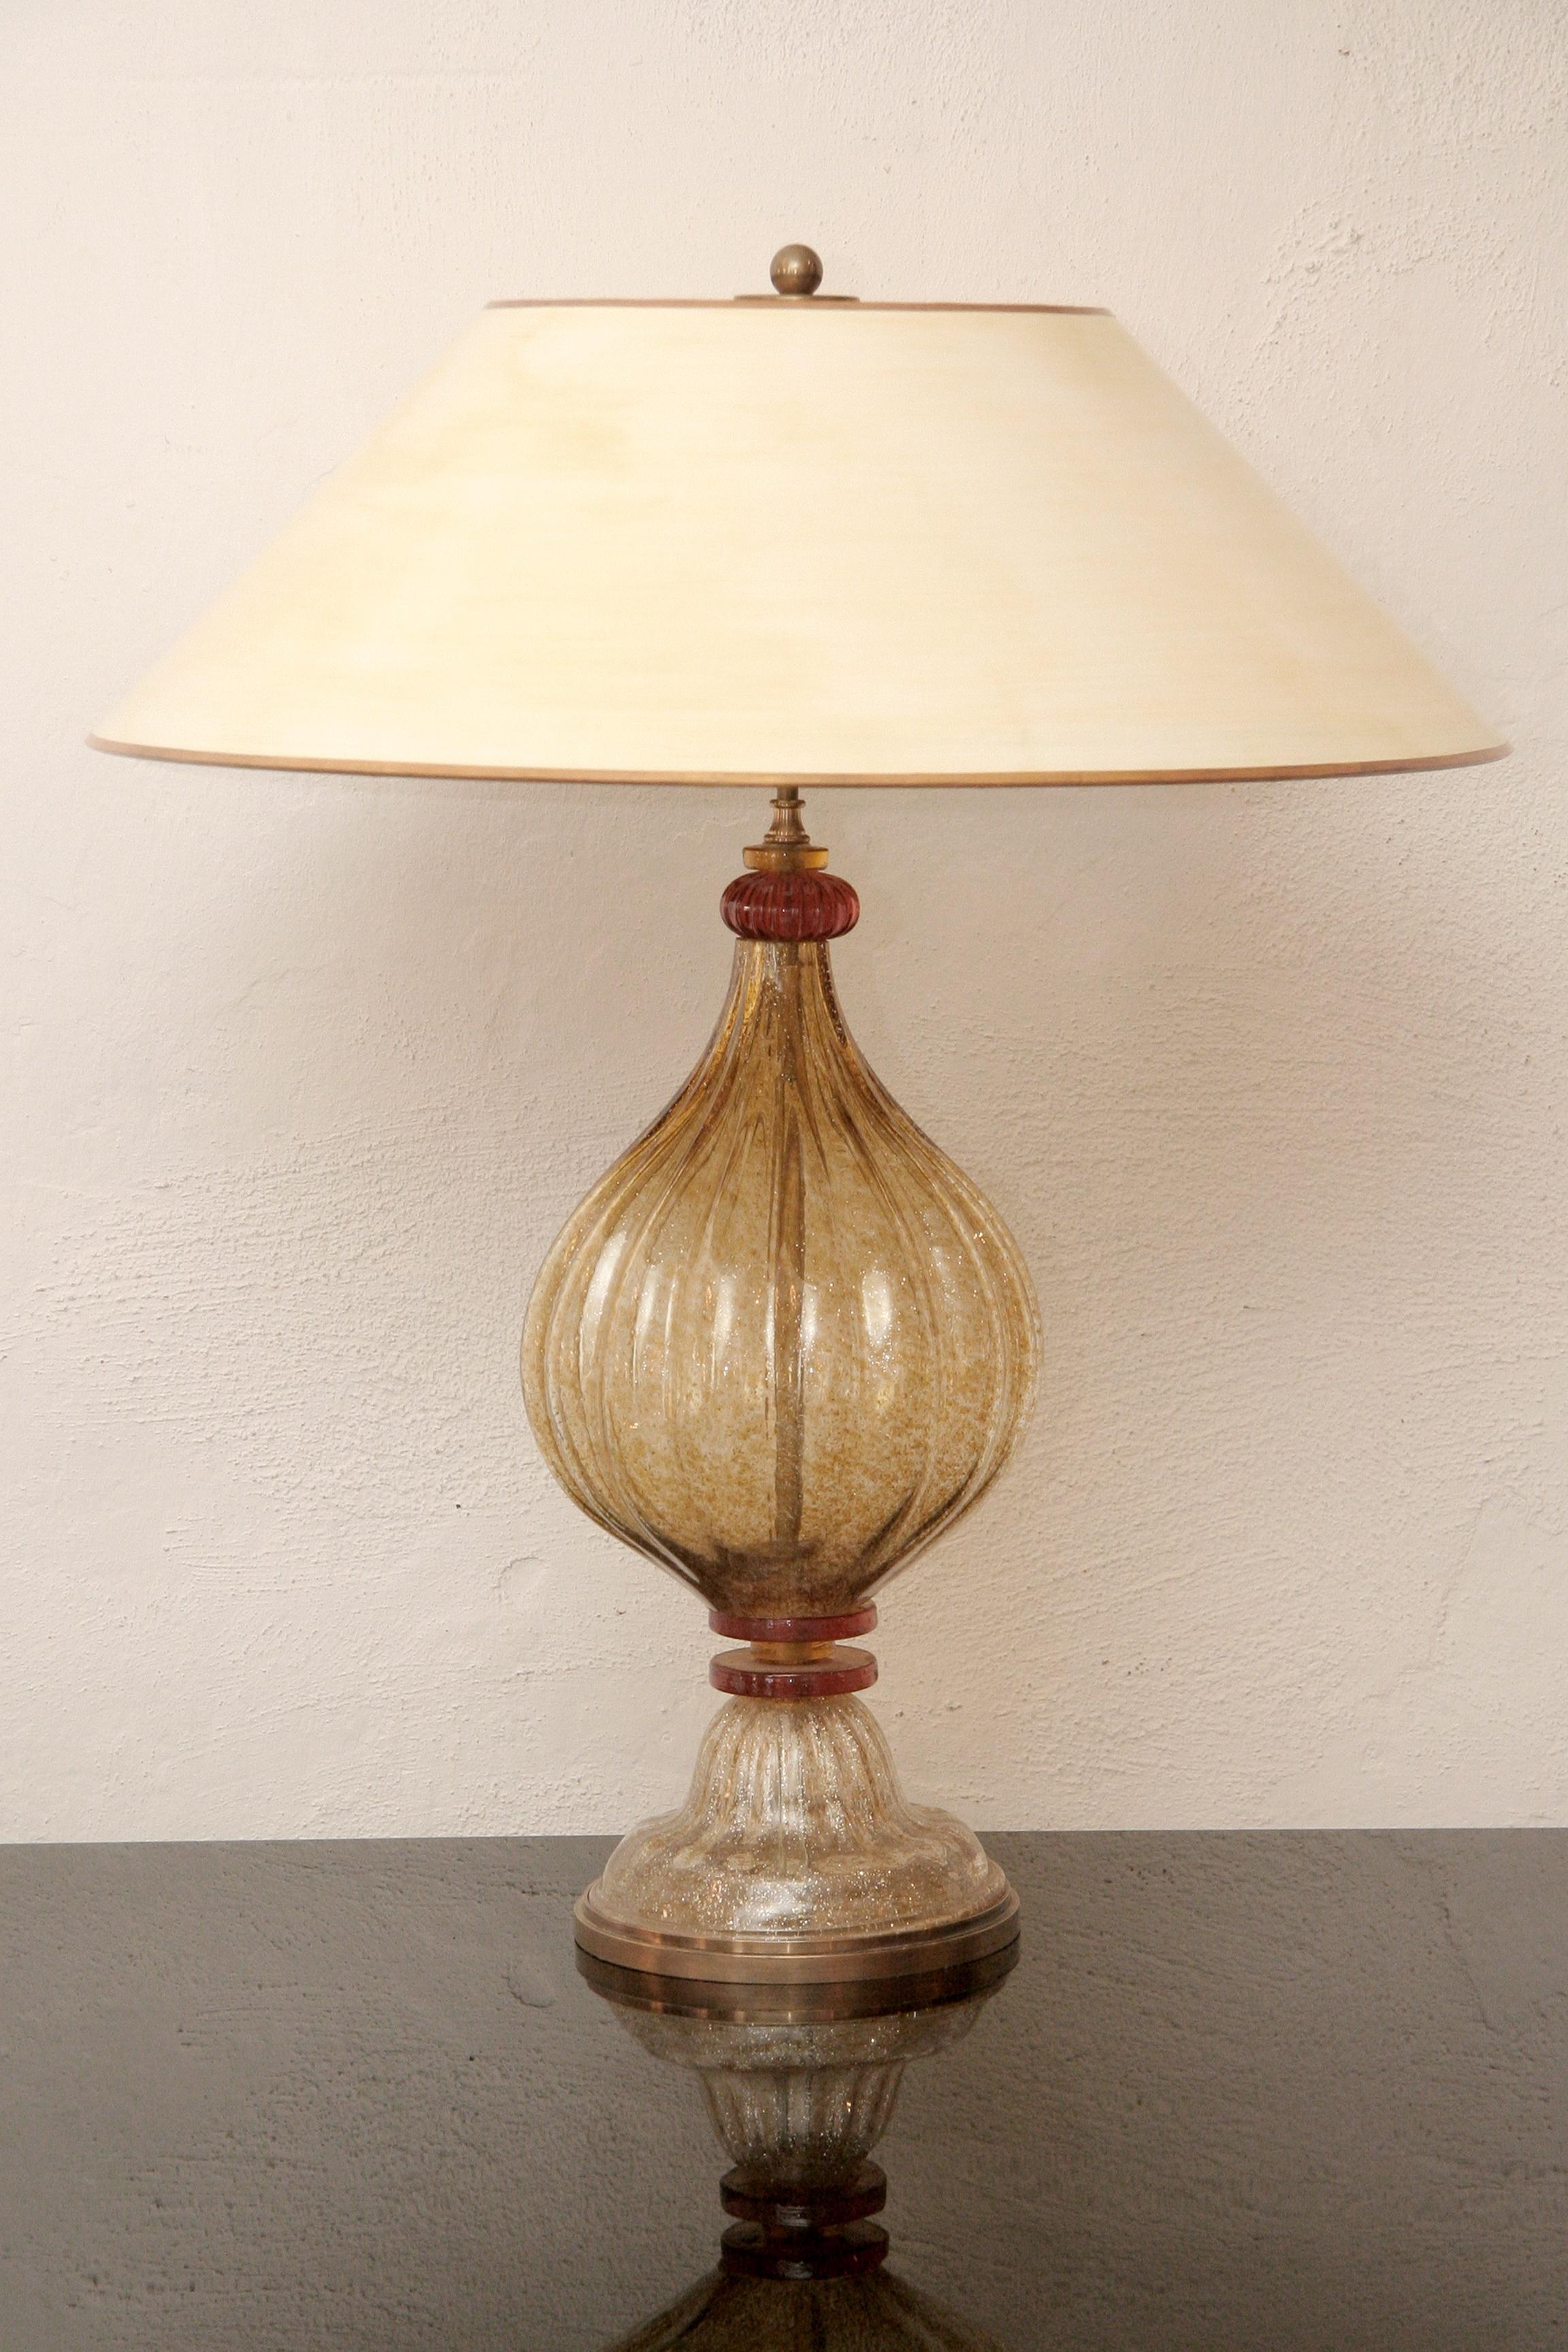 Italienische Murano Glas Tischlampe aus den 1970er Jahren
Gold und orangefarbenes Glas - beigefarbener Lampenschirm
Der mittlere Schaft und der Fuß sind gerippt.
Der Fuß steht in einem patinierten Messingsockel, die Lampenkonstruktion ist ebenfalls